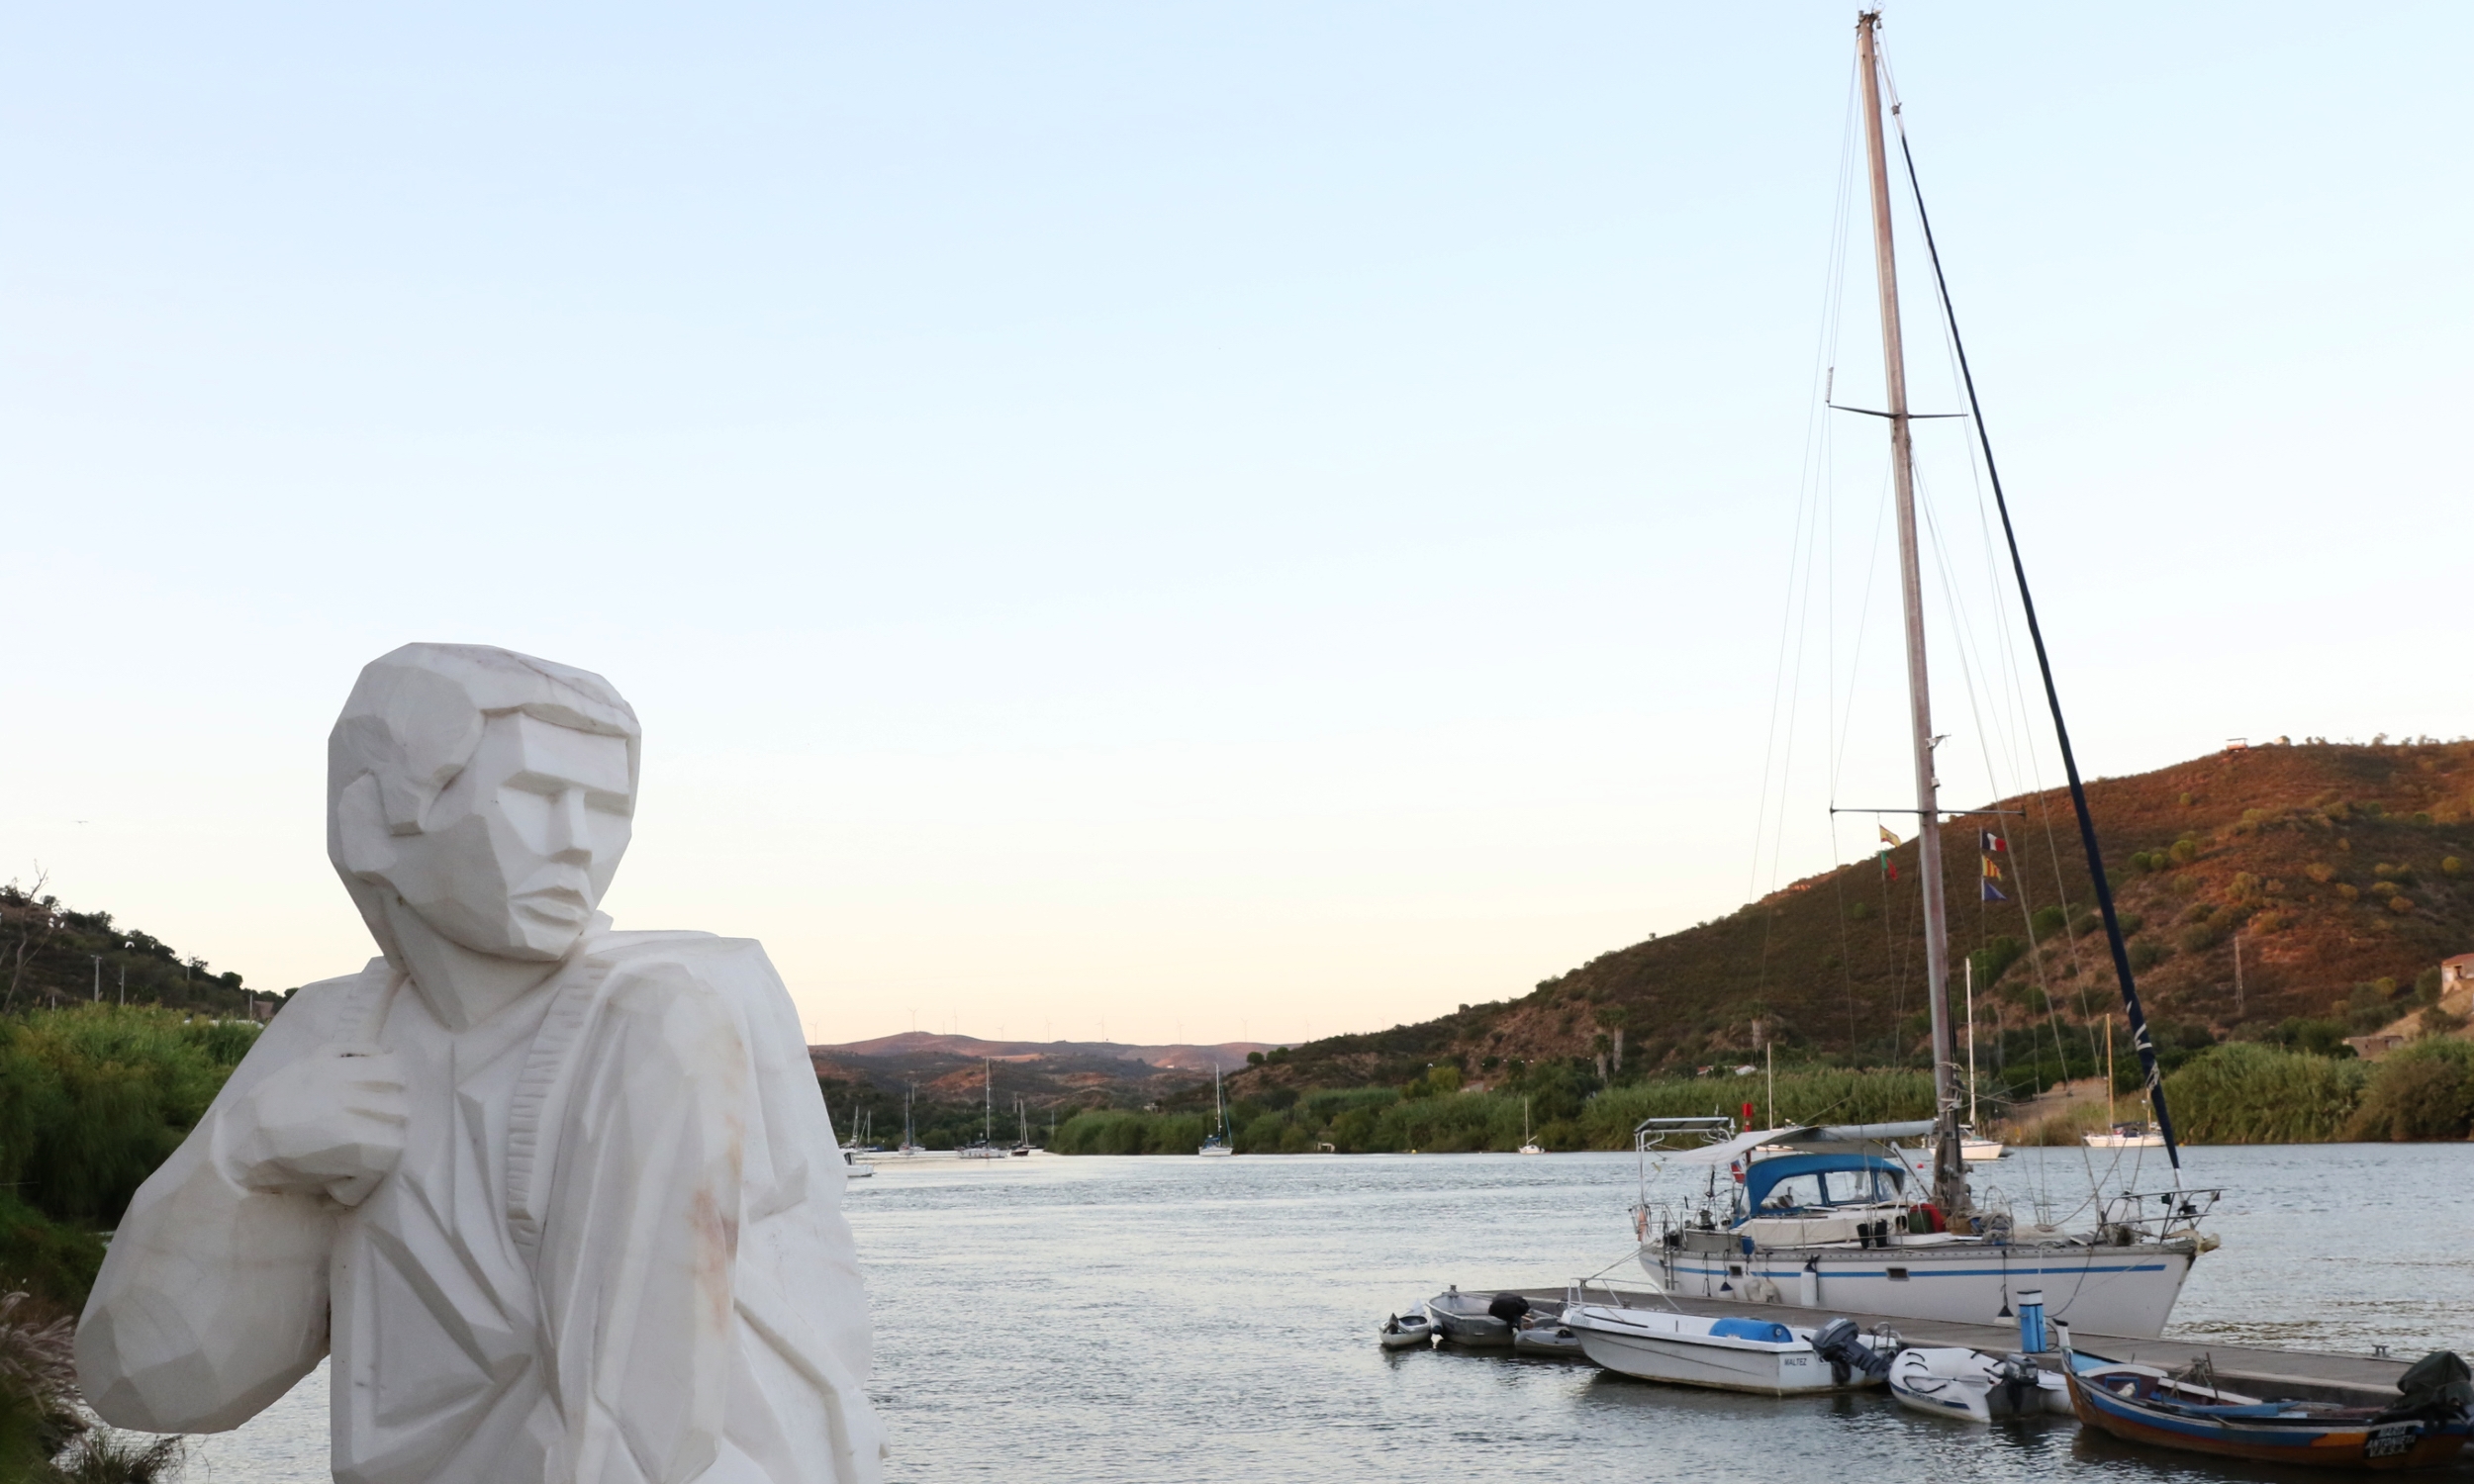 Estátua do contrabandista recorda o passado da região raiana